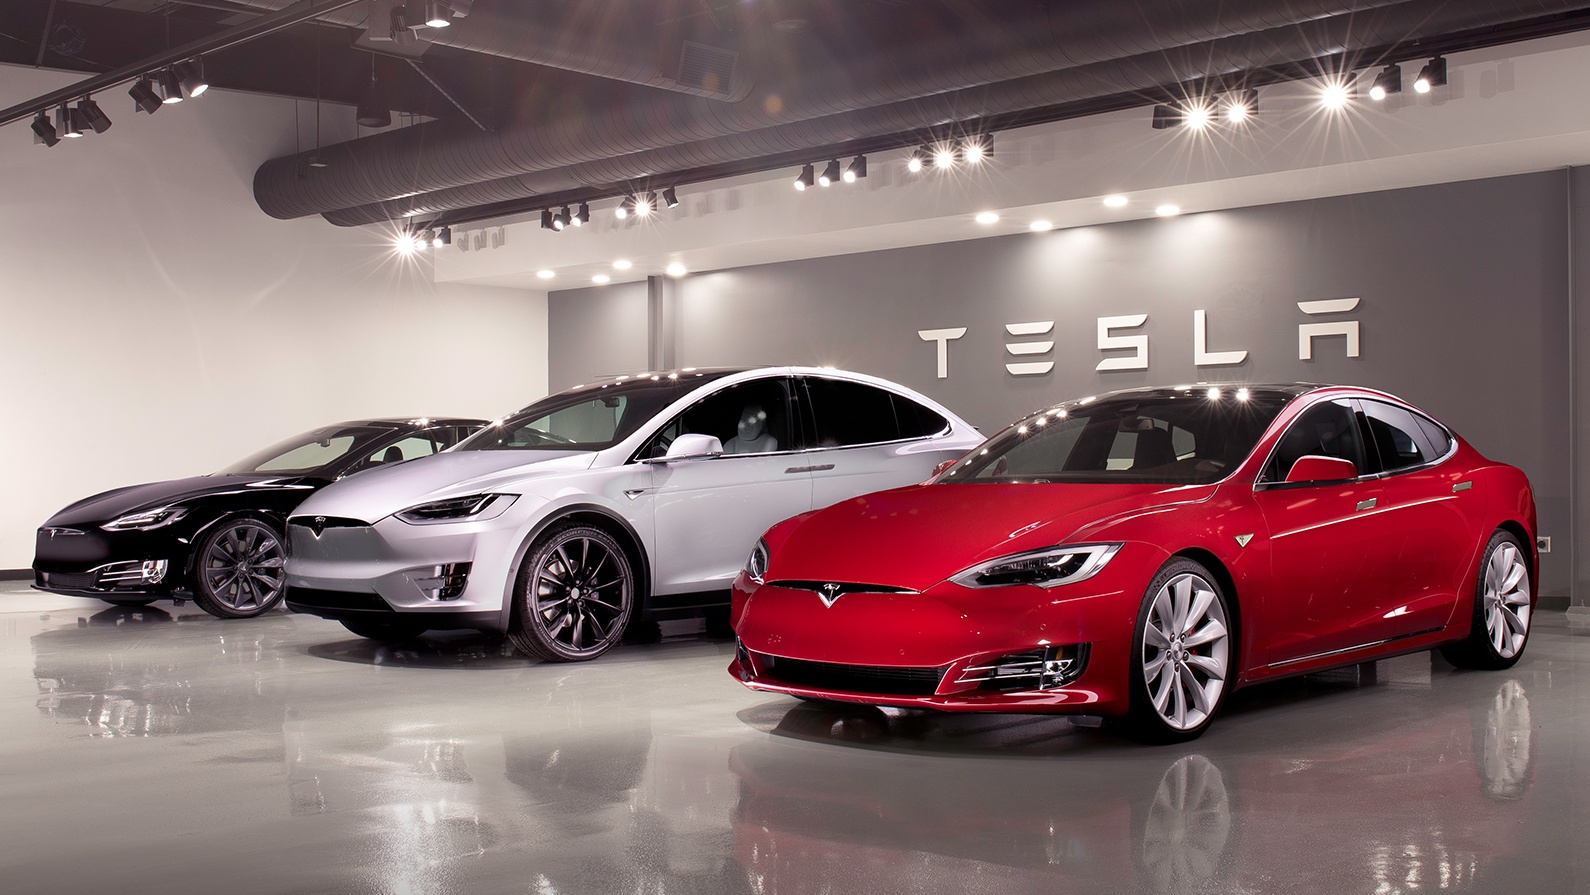 Tesla chuẩn bị gia nhập thị trường Thái Lan với xe điện, pin và năng lượng mặt trời